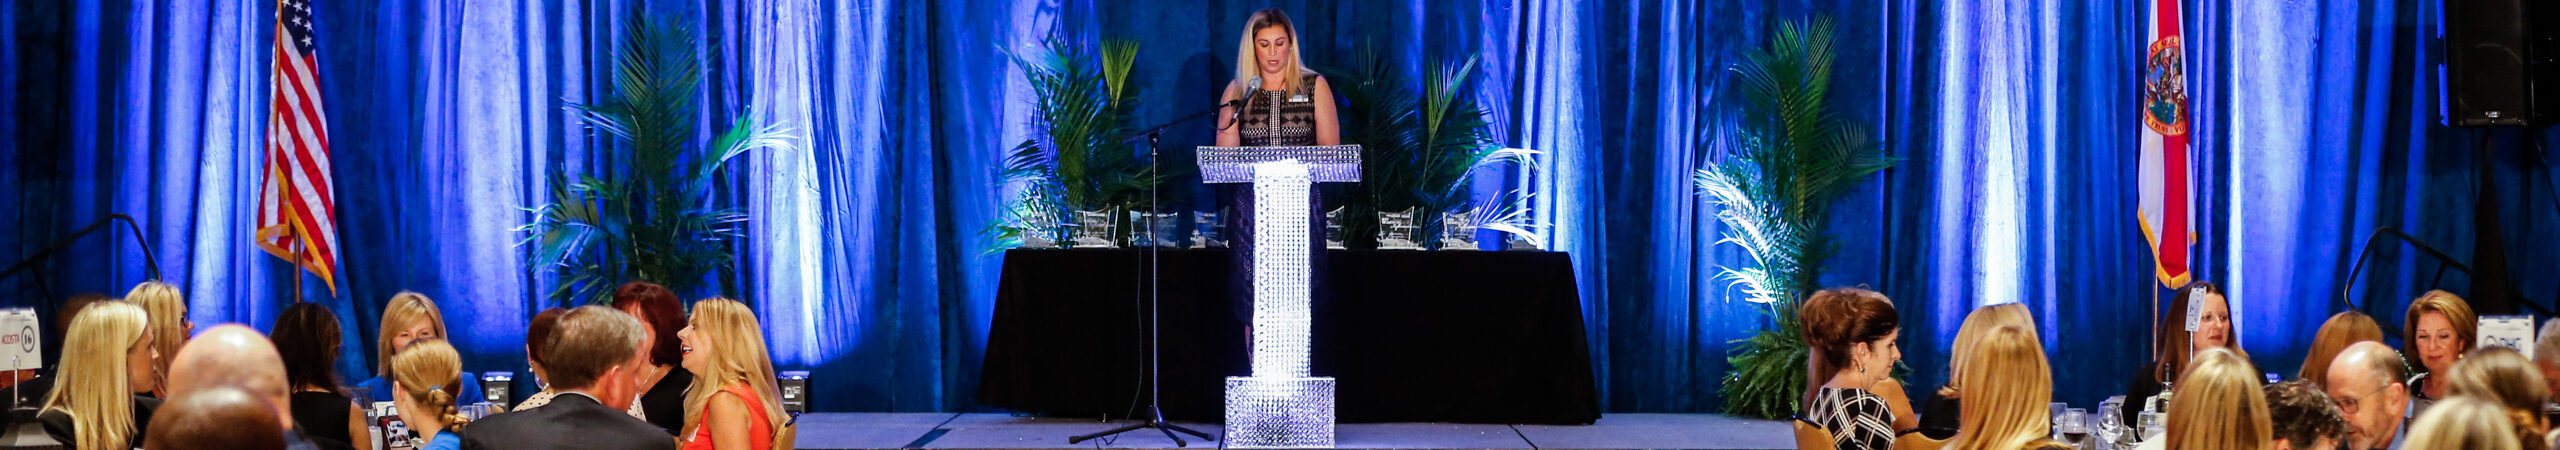 Jacksonville, FL JBJ - Women of Influence Awards